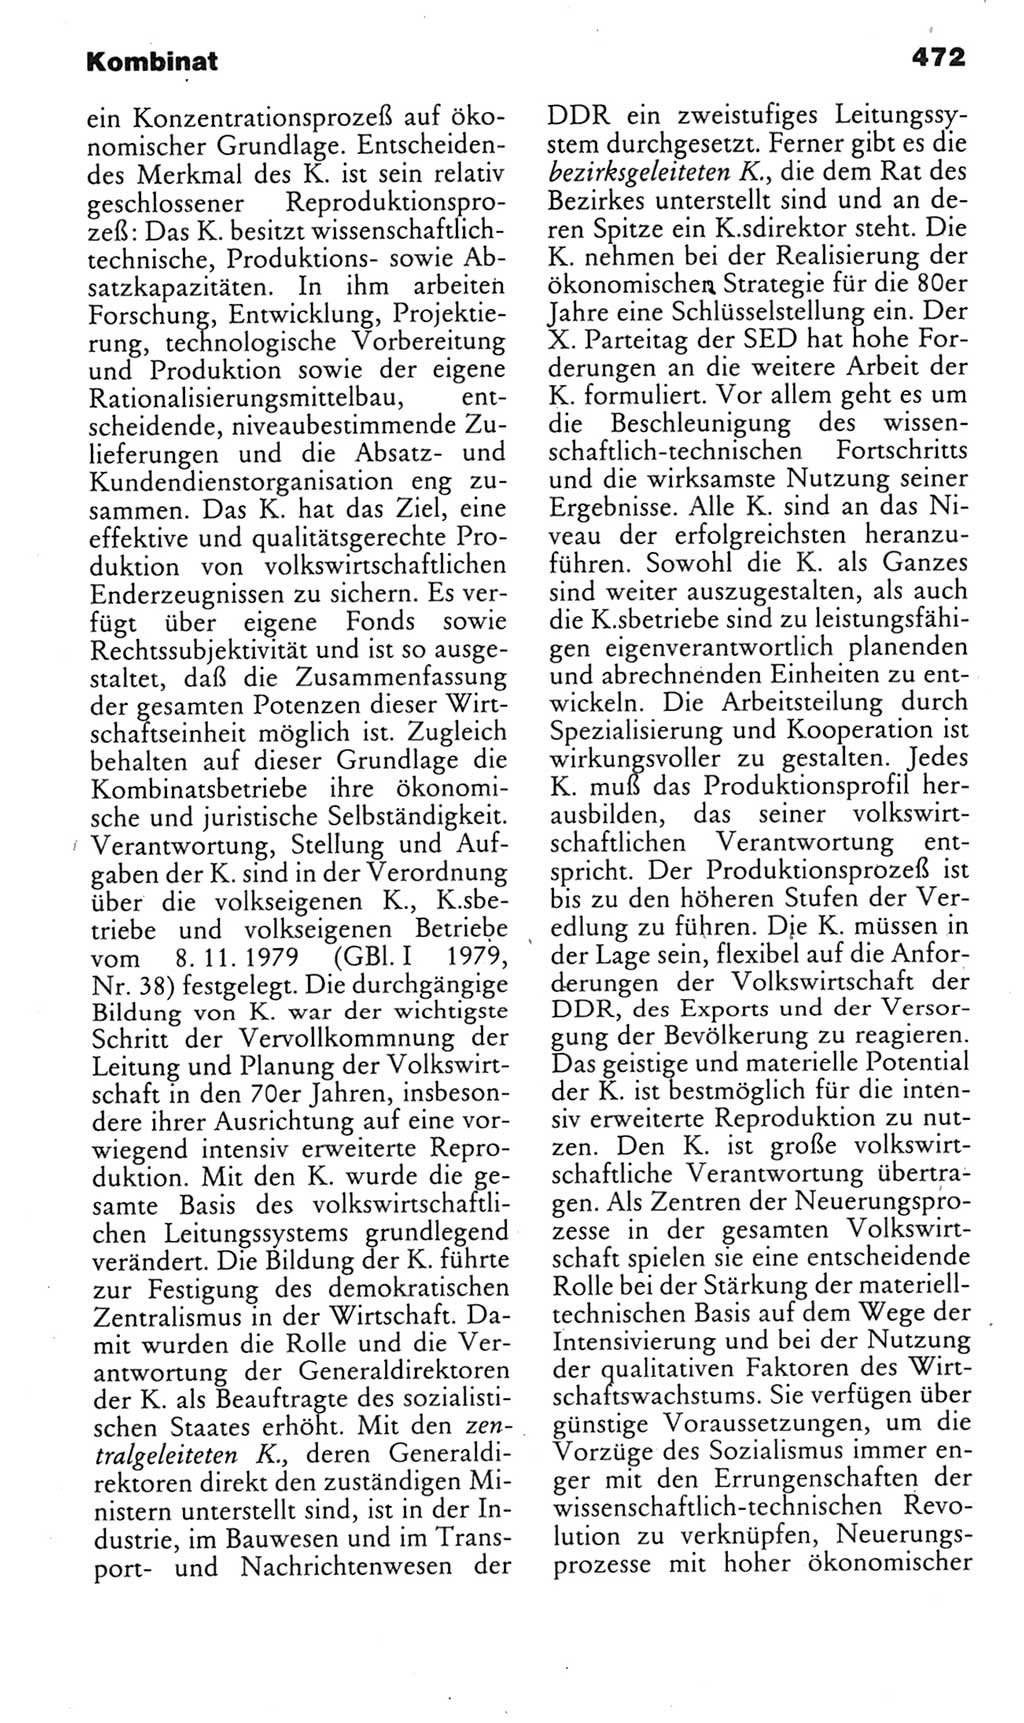 Kleines politisches Wörterbuch [Deutsche Demokratische Republik (DDR)] 1985, Seite 472 (Kl. pol. Wb. DDR 1985, S. 472)